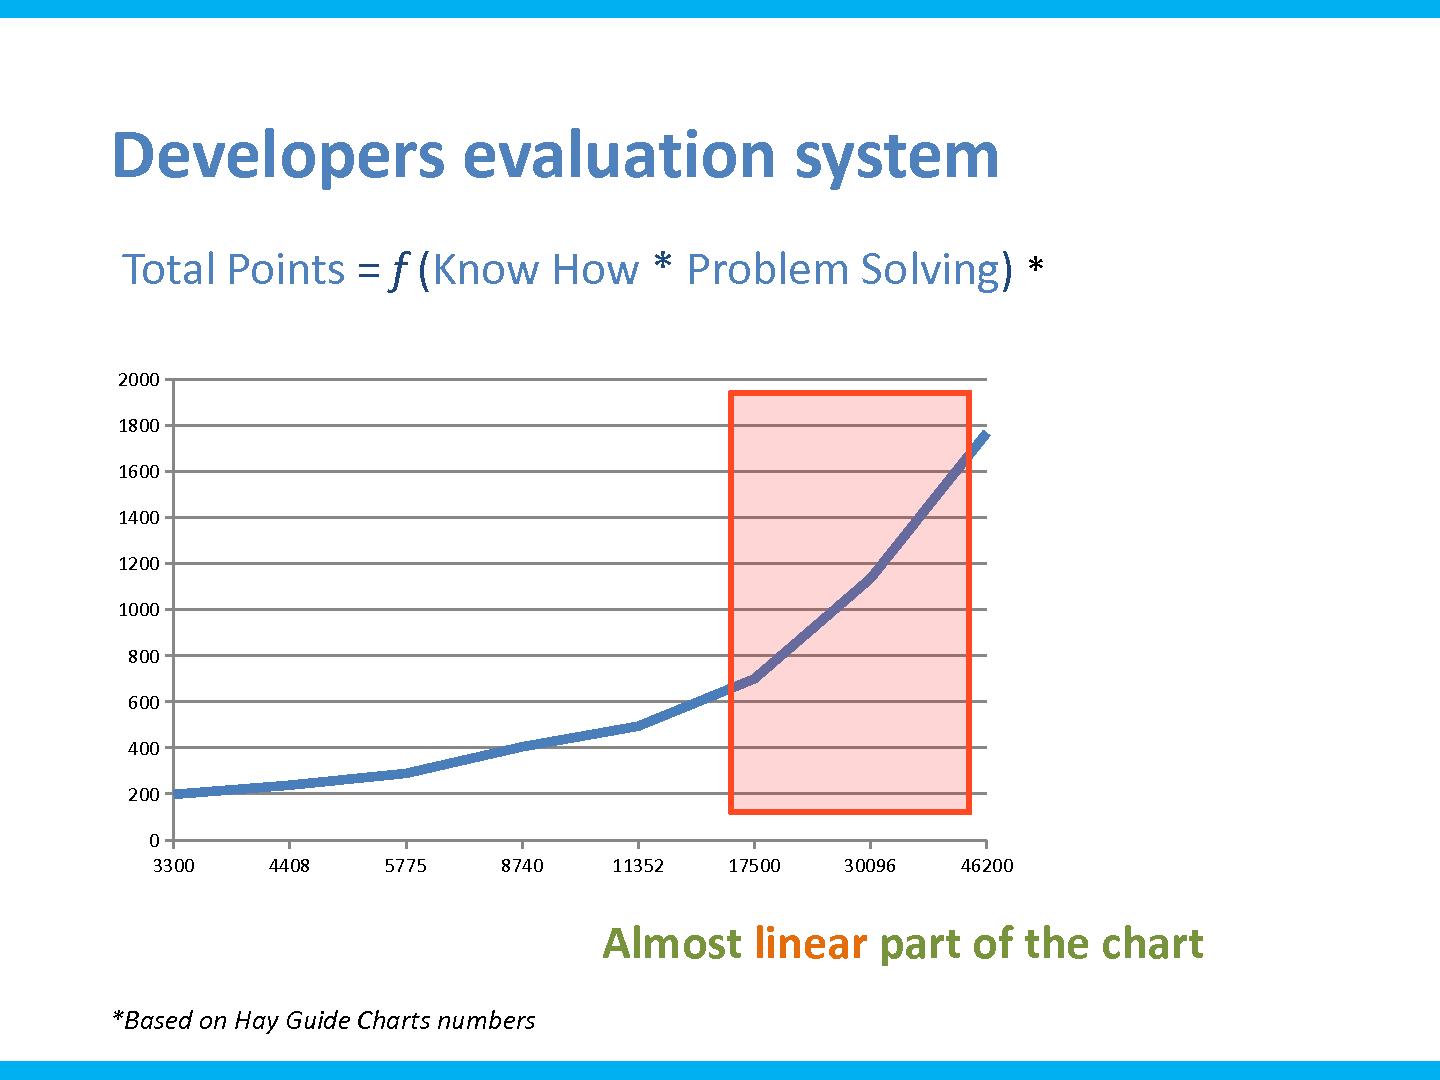 Файл:Линейка для программиста. Теория и практика построения системы оценки эффективносит разработчиков ПО.pdf